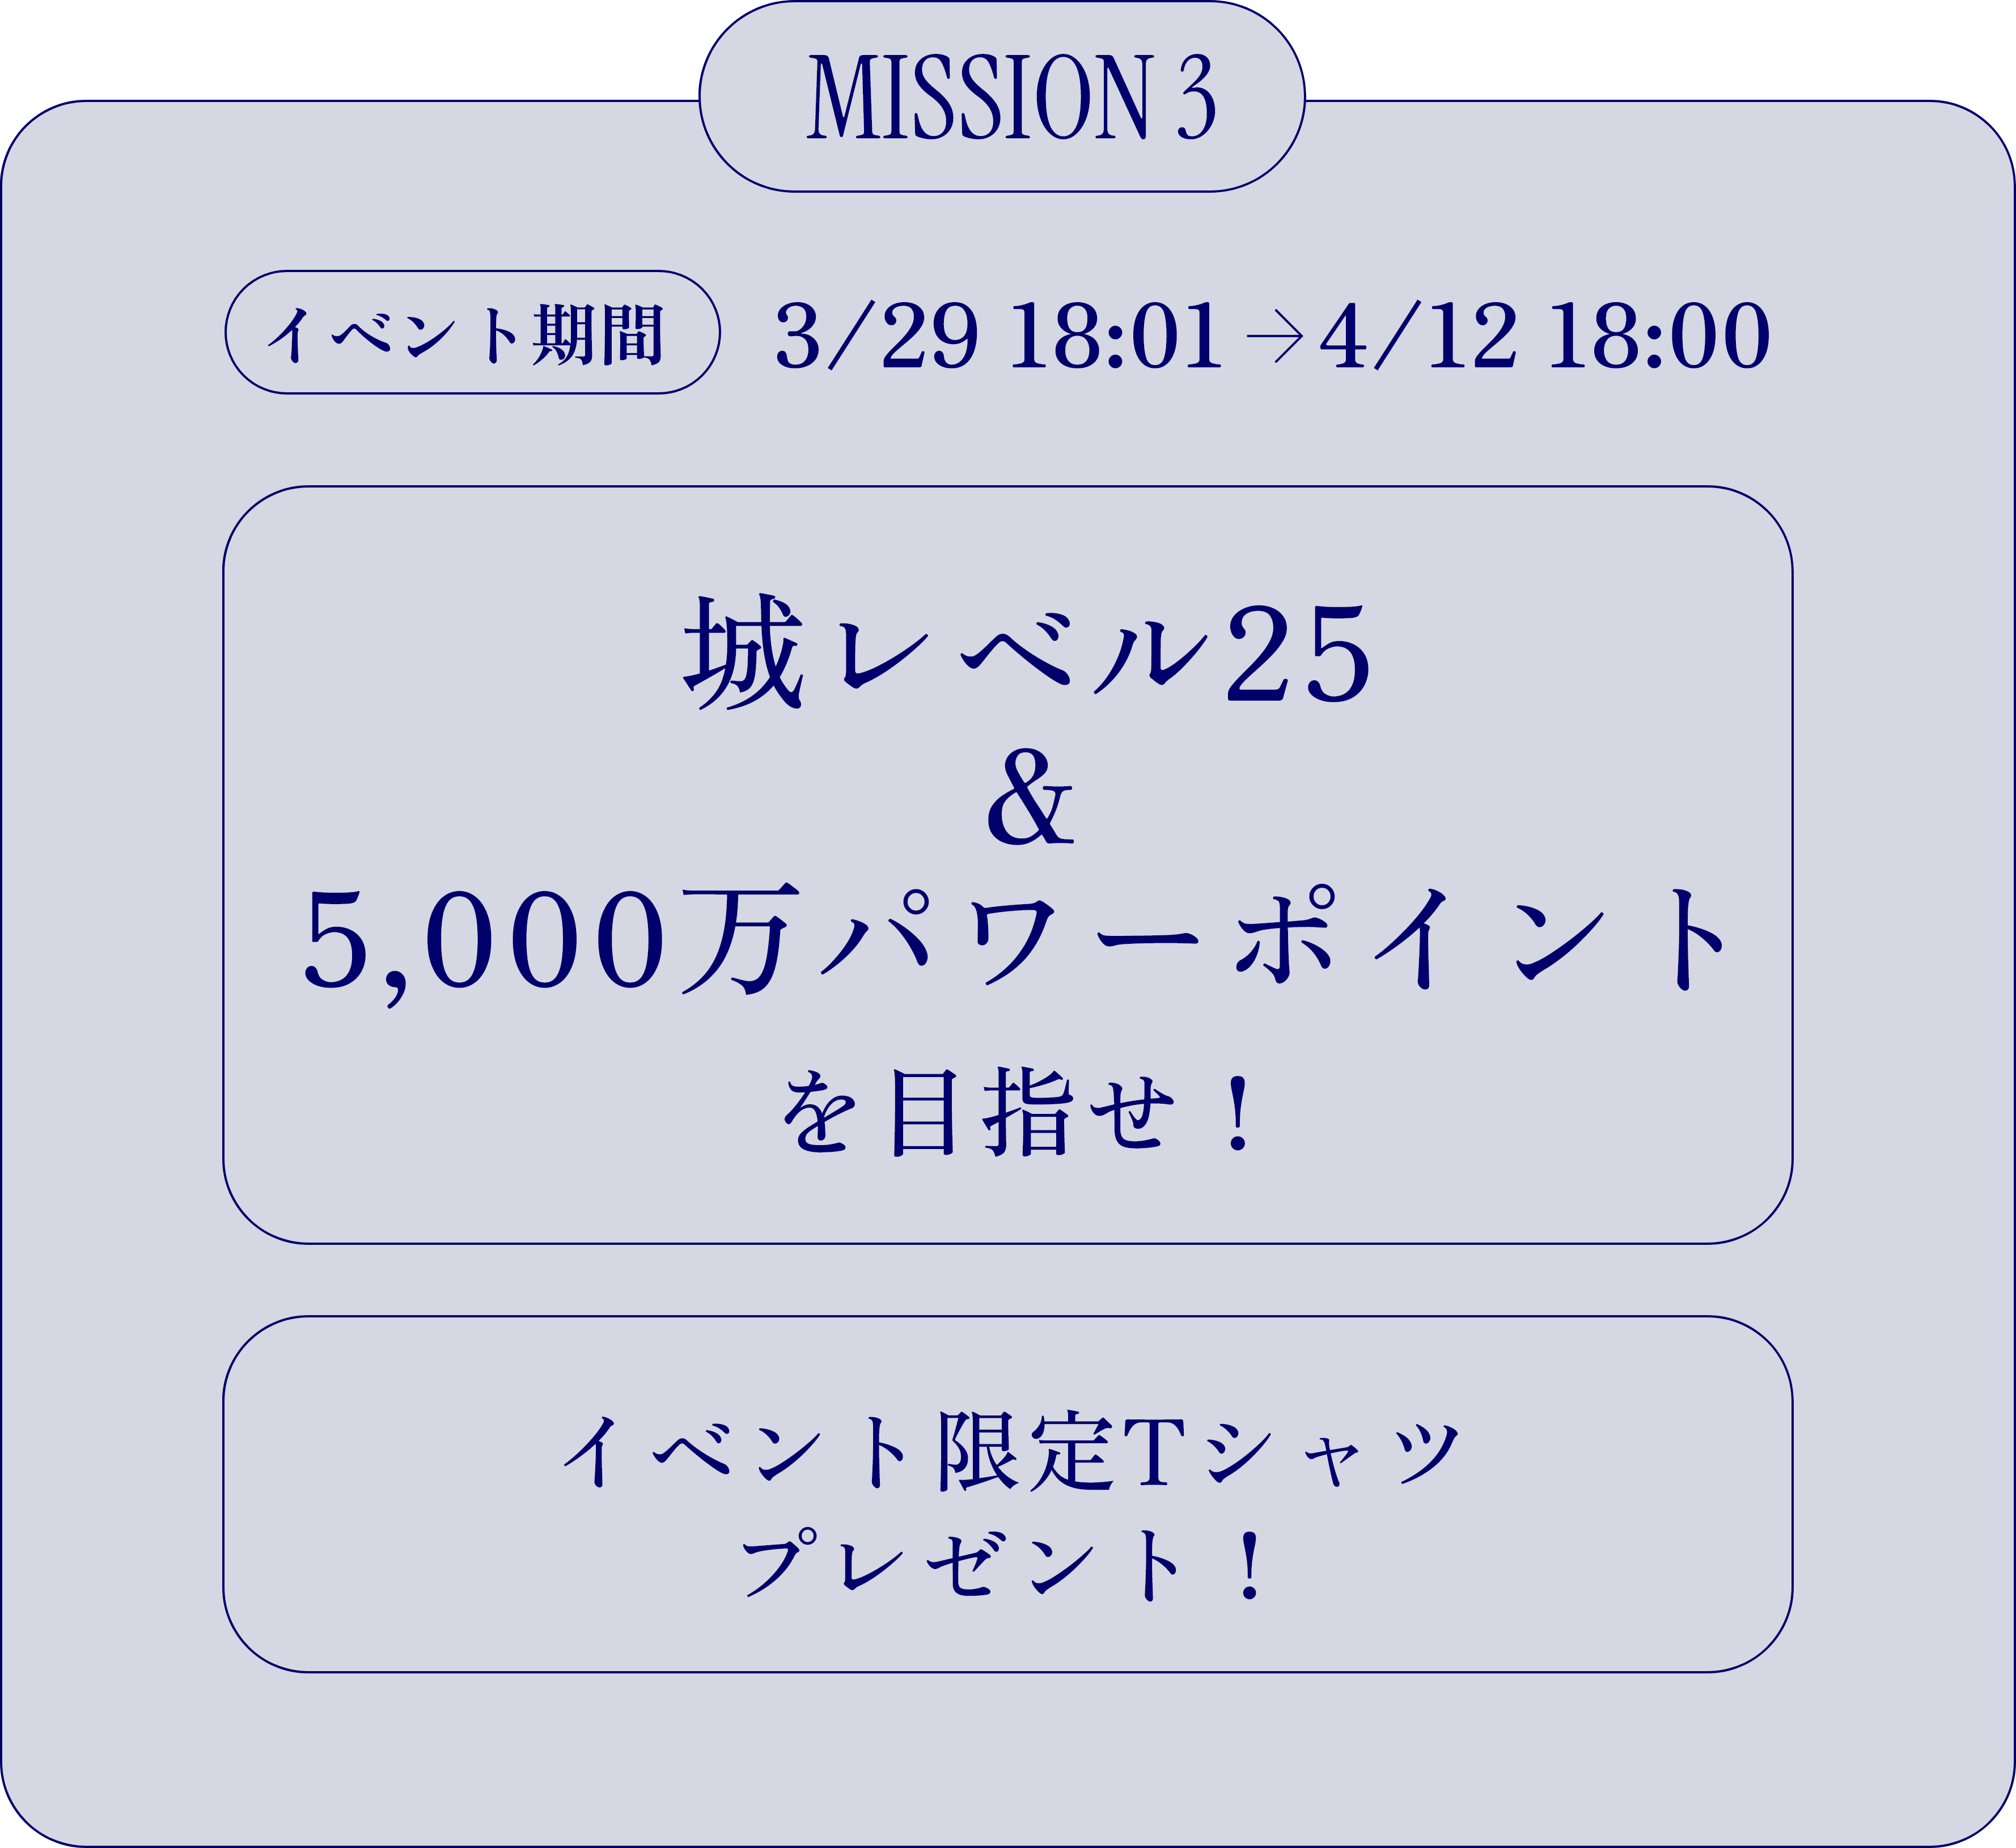 MISSION 3